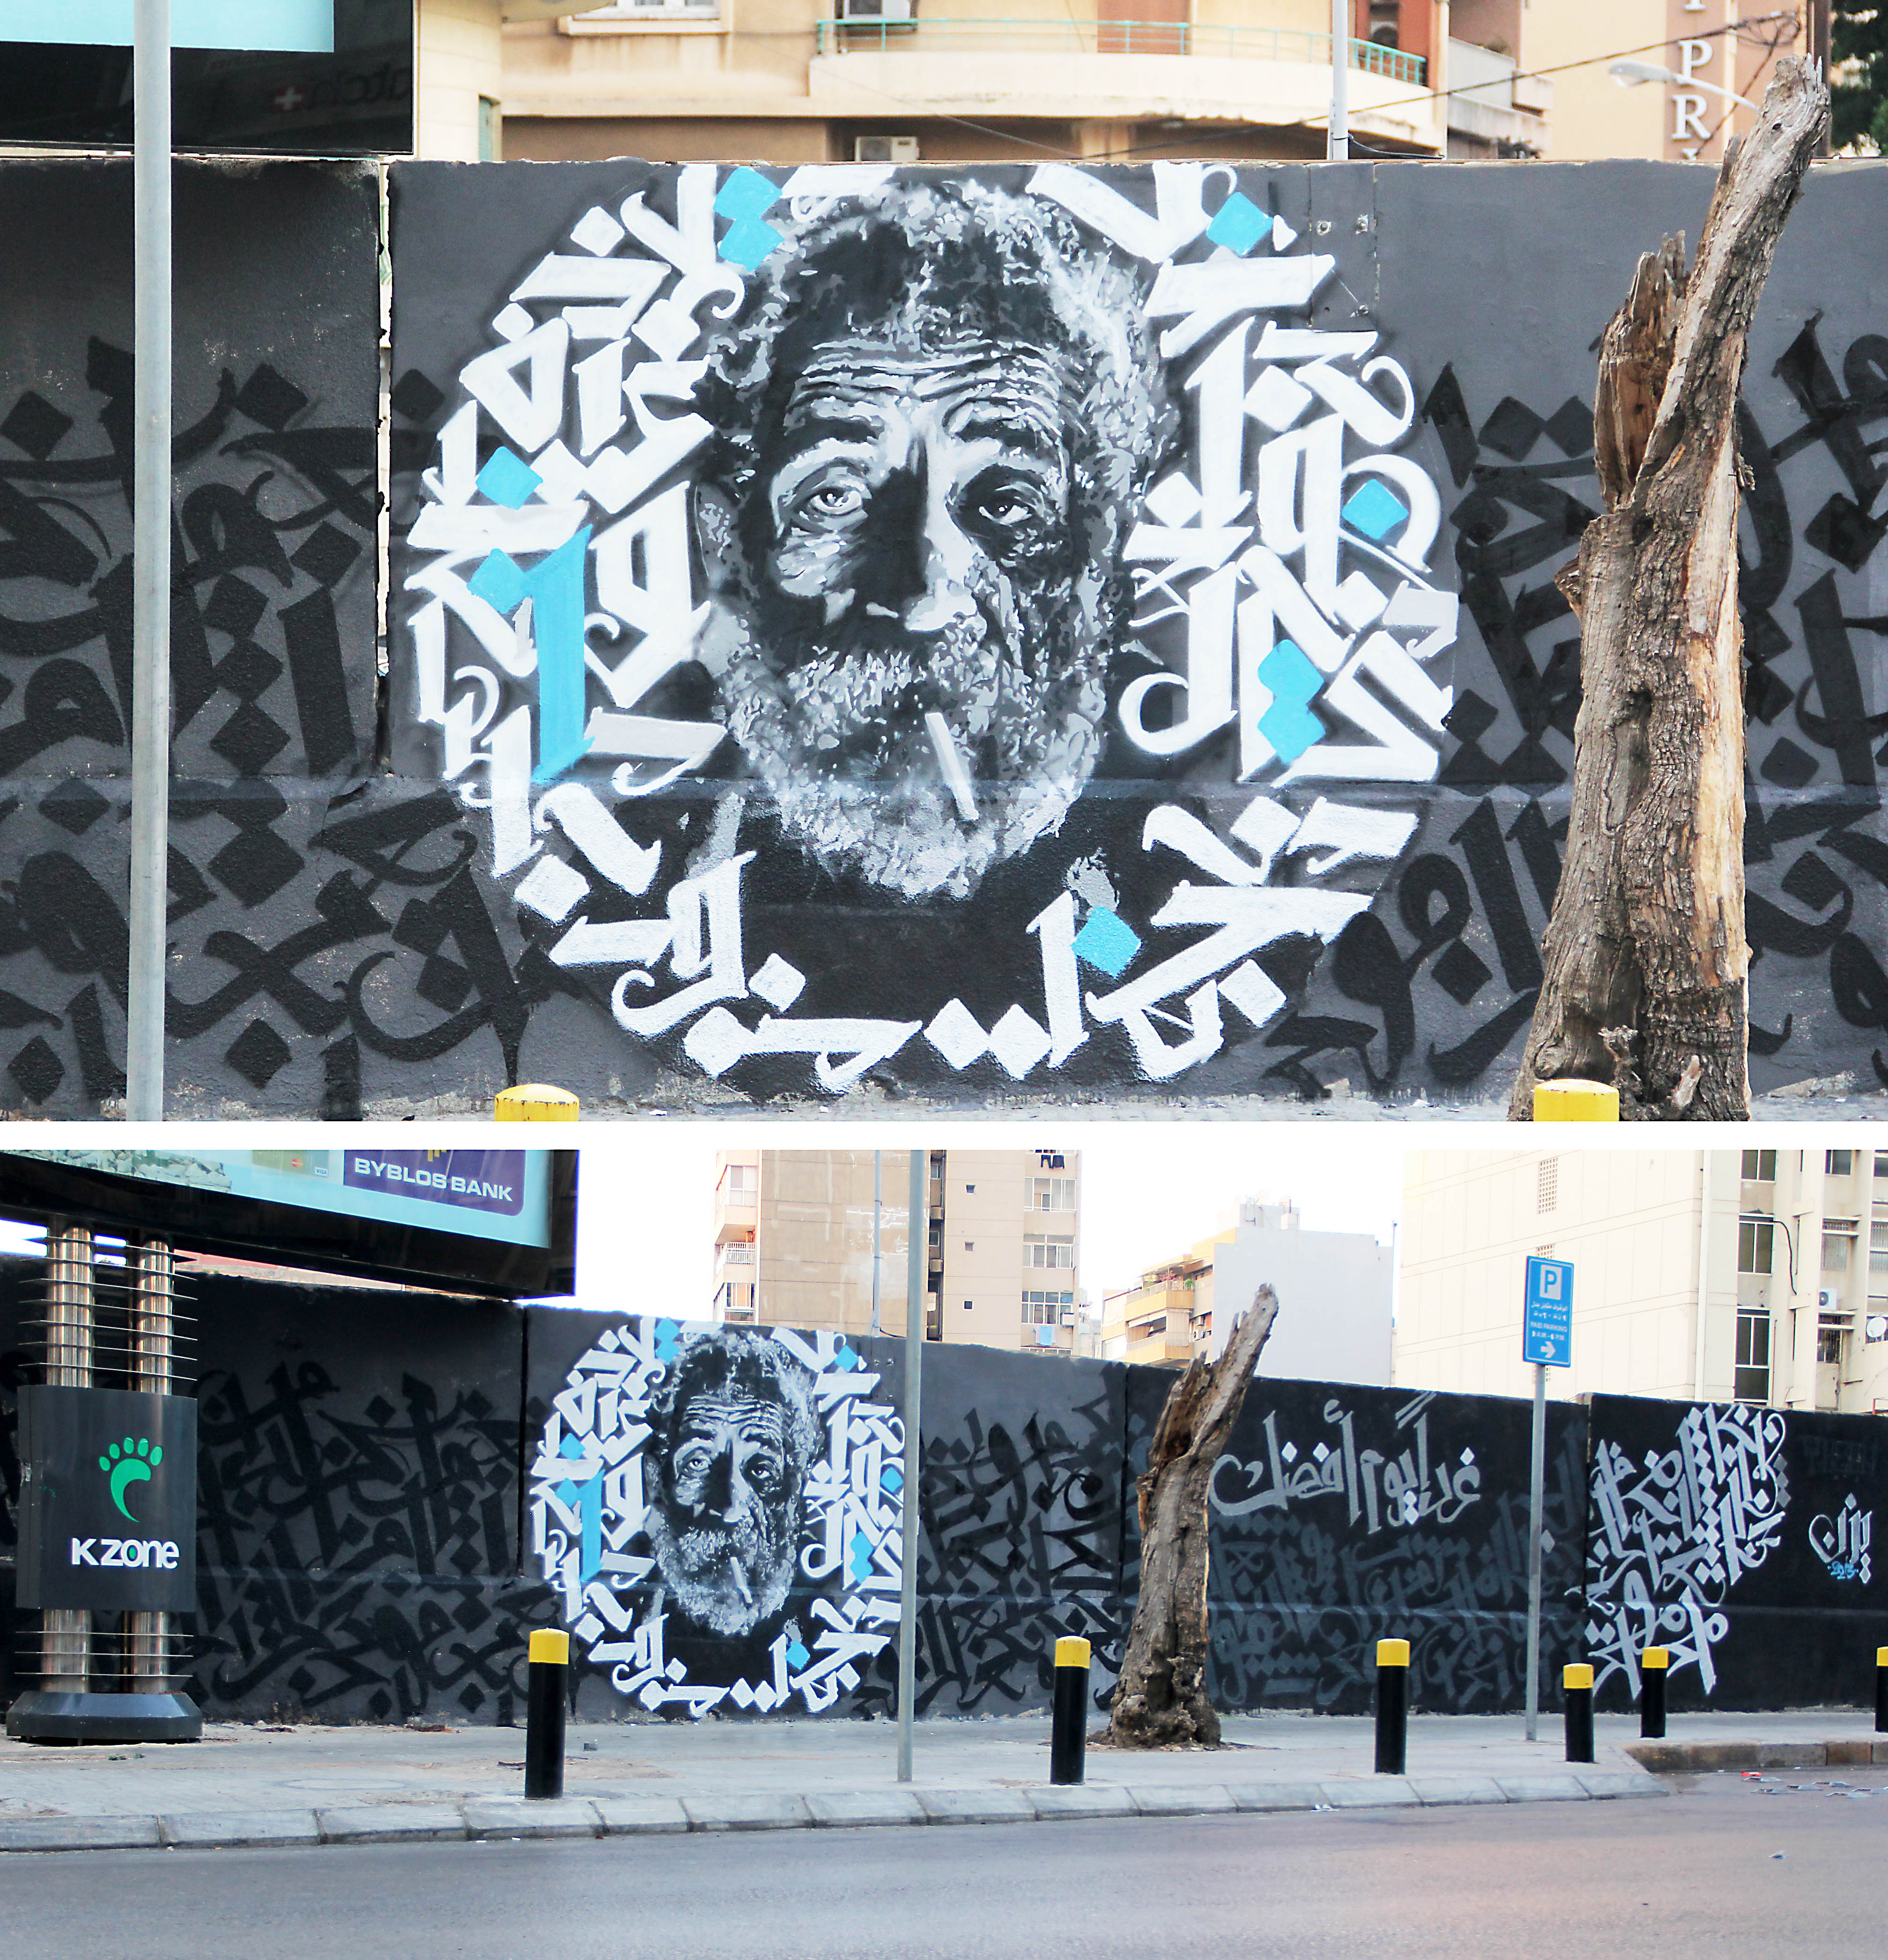 Muurschildering van Ali Abdallah, een dakloze man die in de Harmabuurt woonde. Hij stierf door de kou.